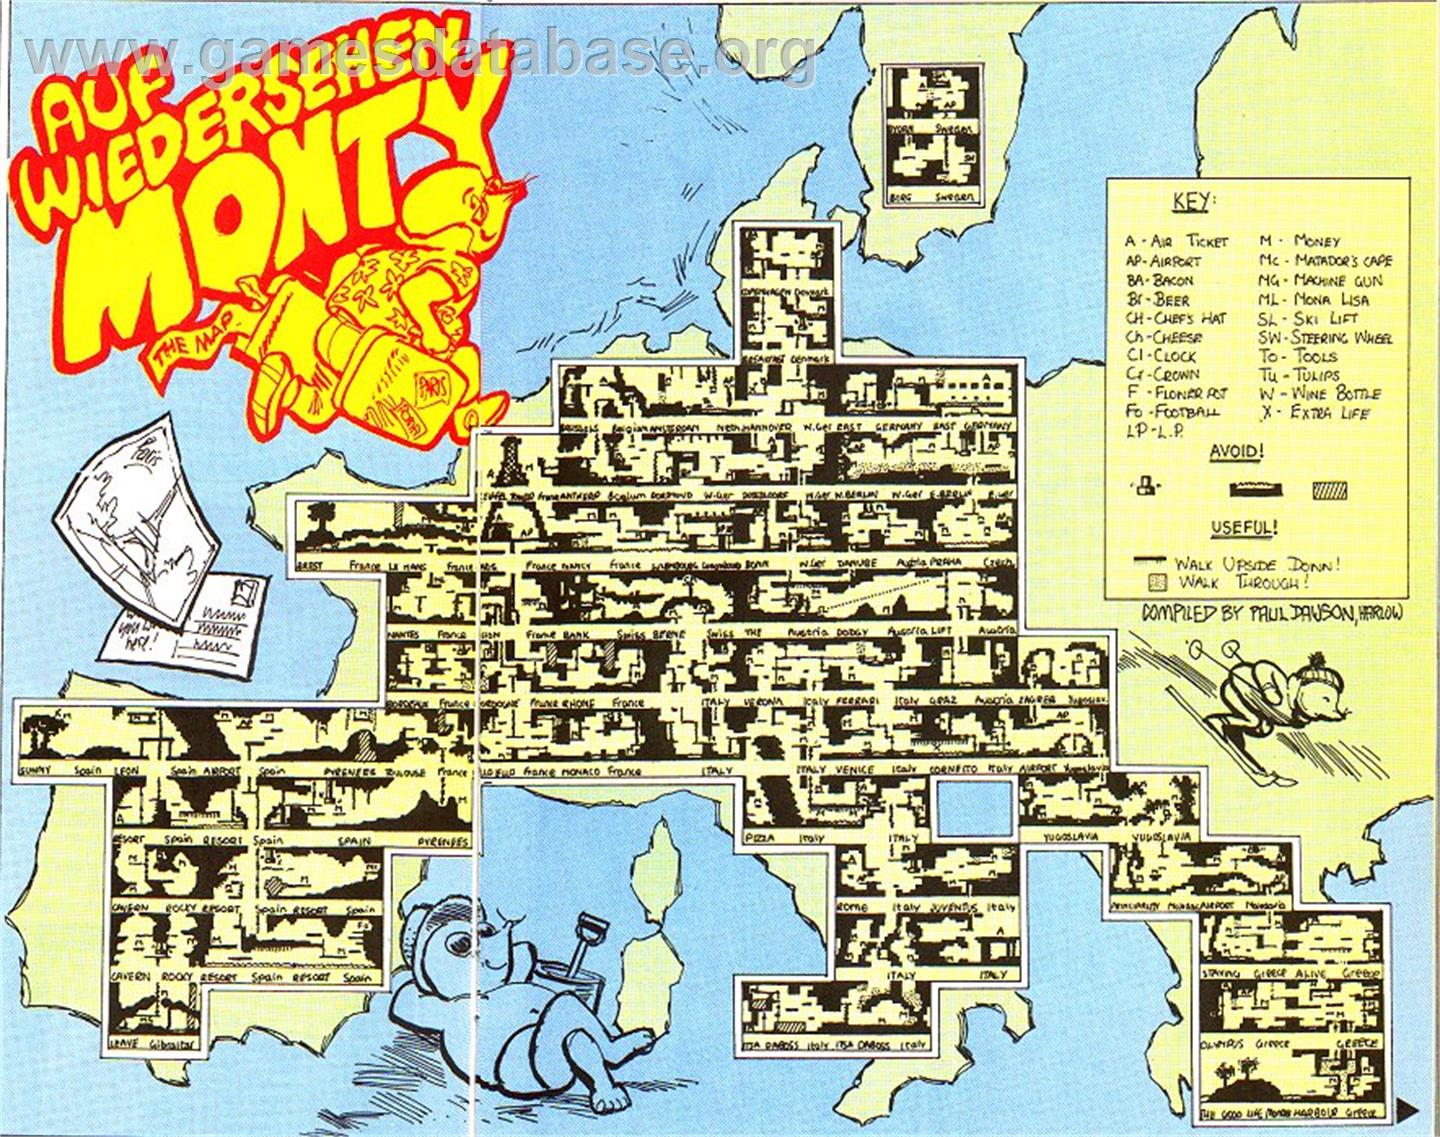 Auf Wiedersehen Monty - MSX 2 - Artwork - Map